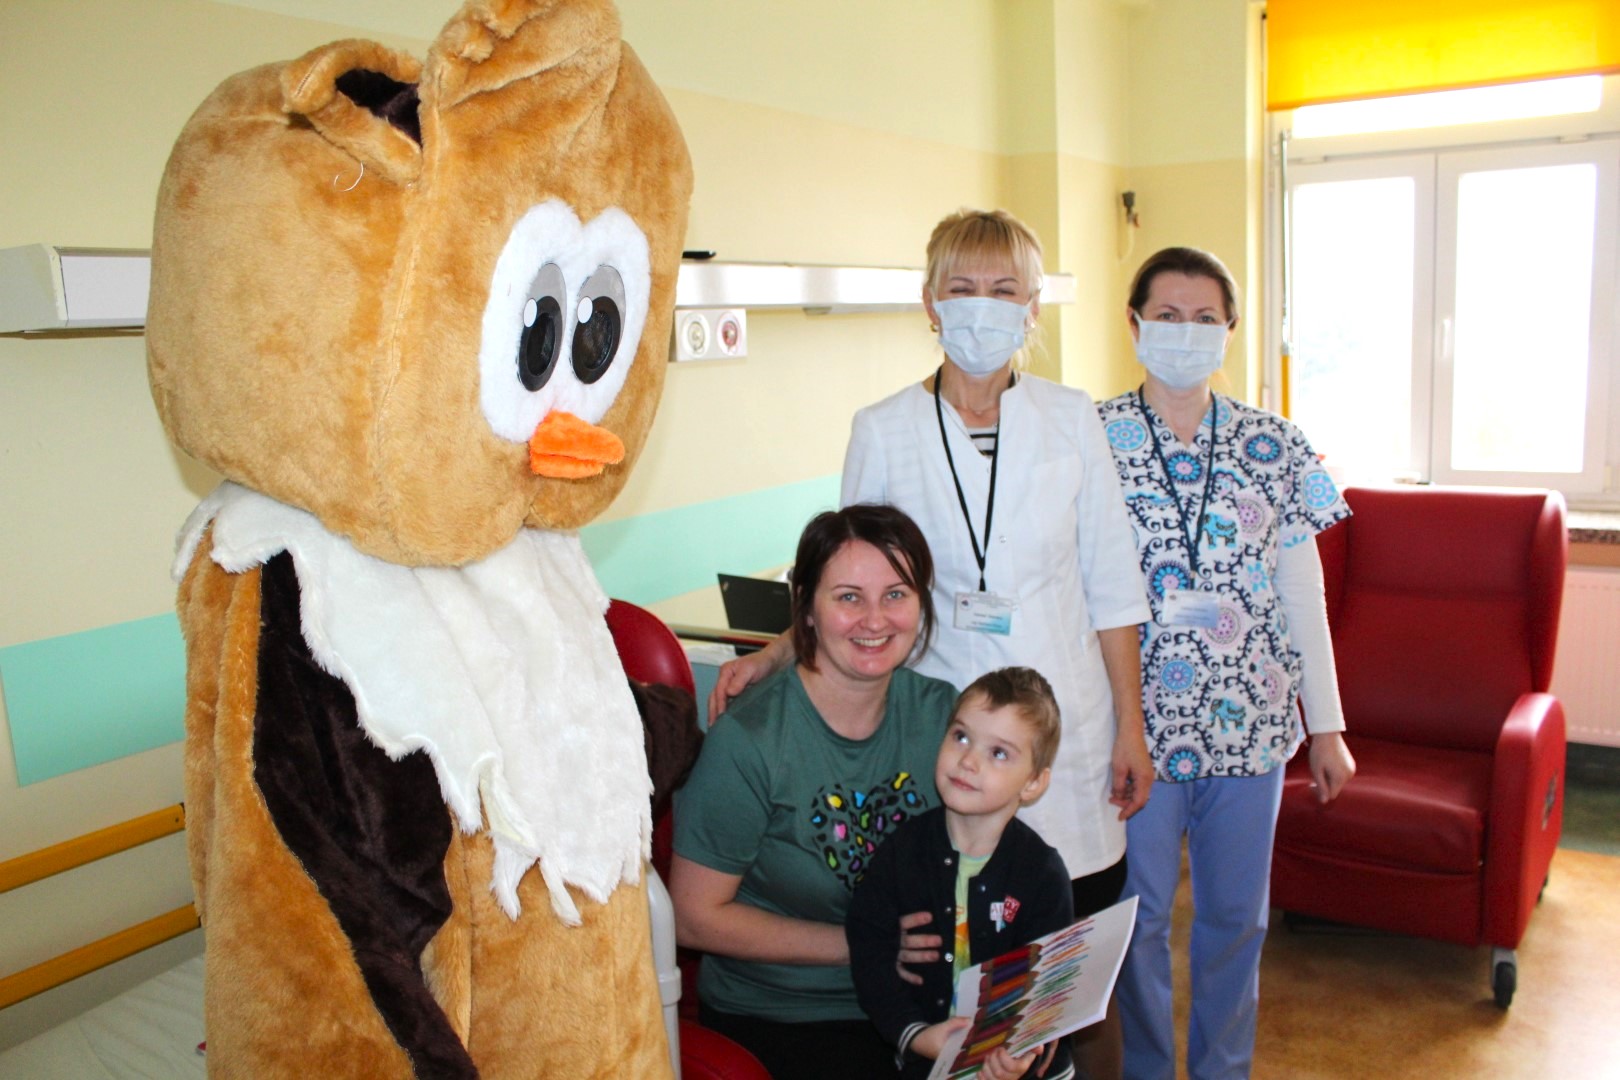 Na Oddziale dziecięcym szpitala pluszowa sowa pozuje do zdjęcia w dwiema paniami pielęgniarkami i pacjentami